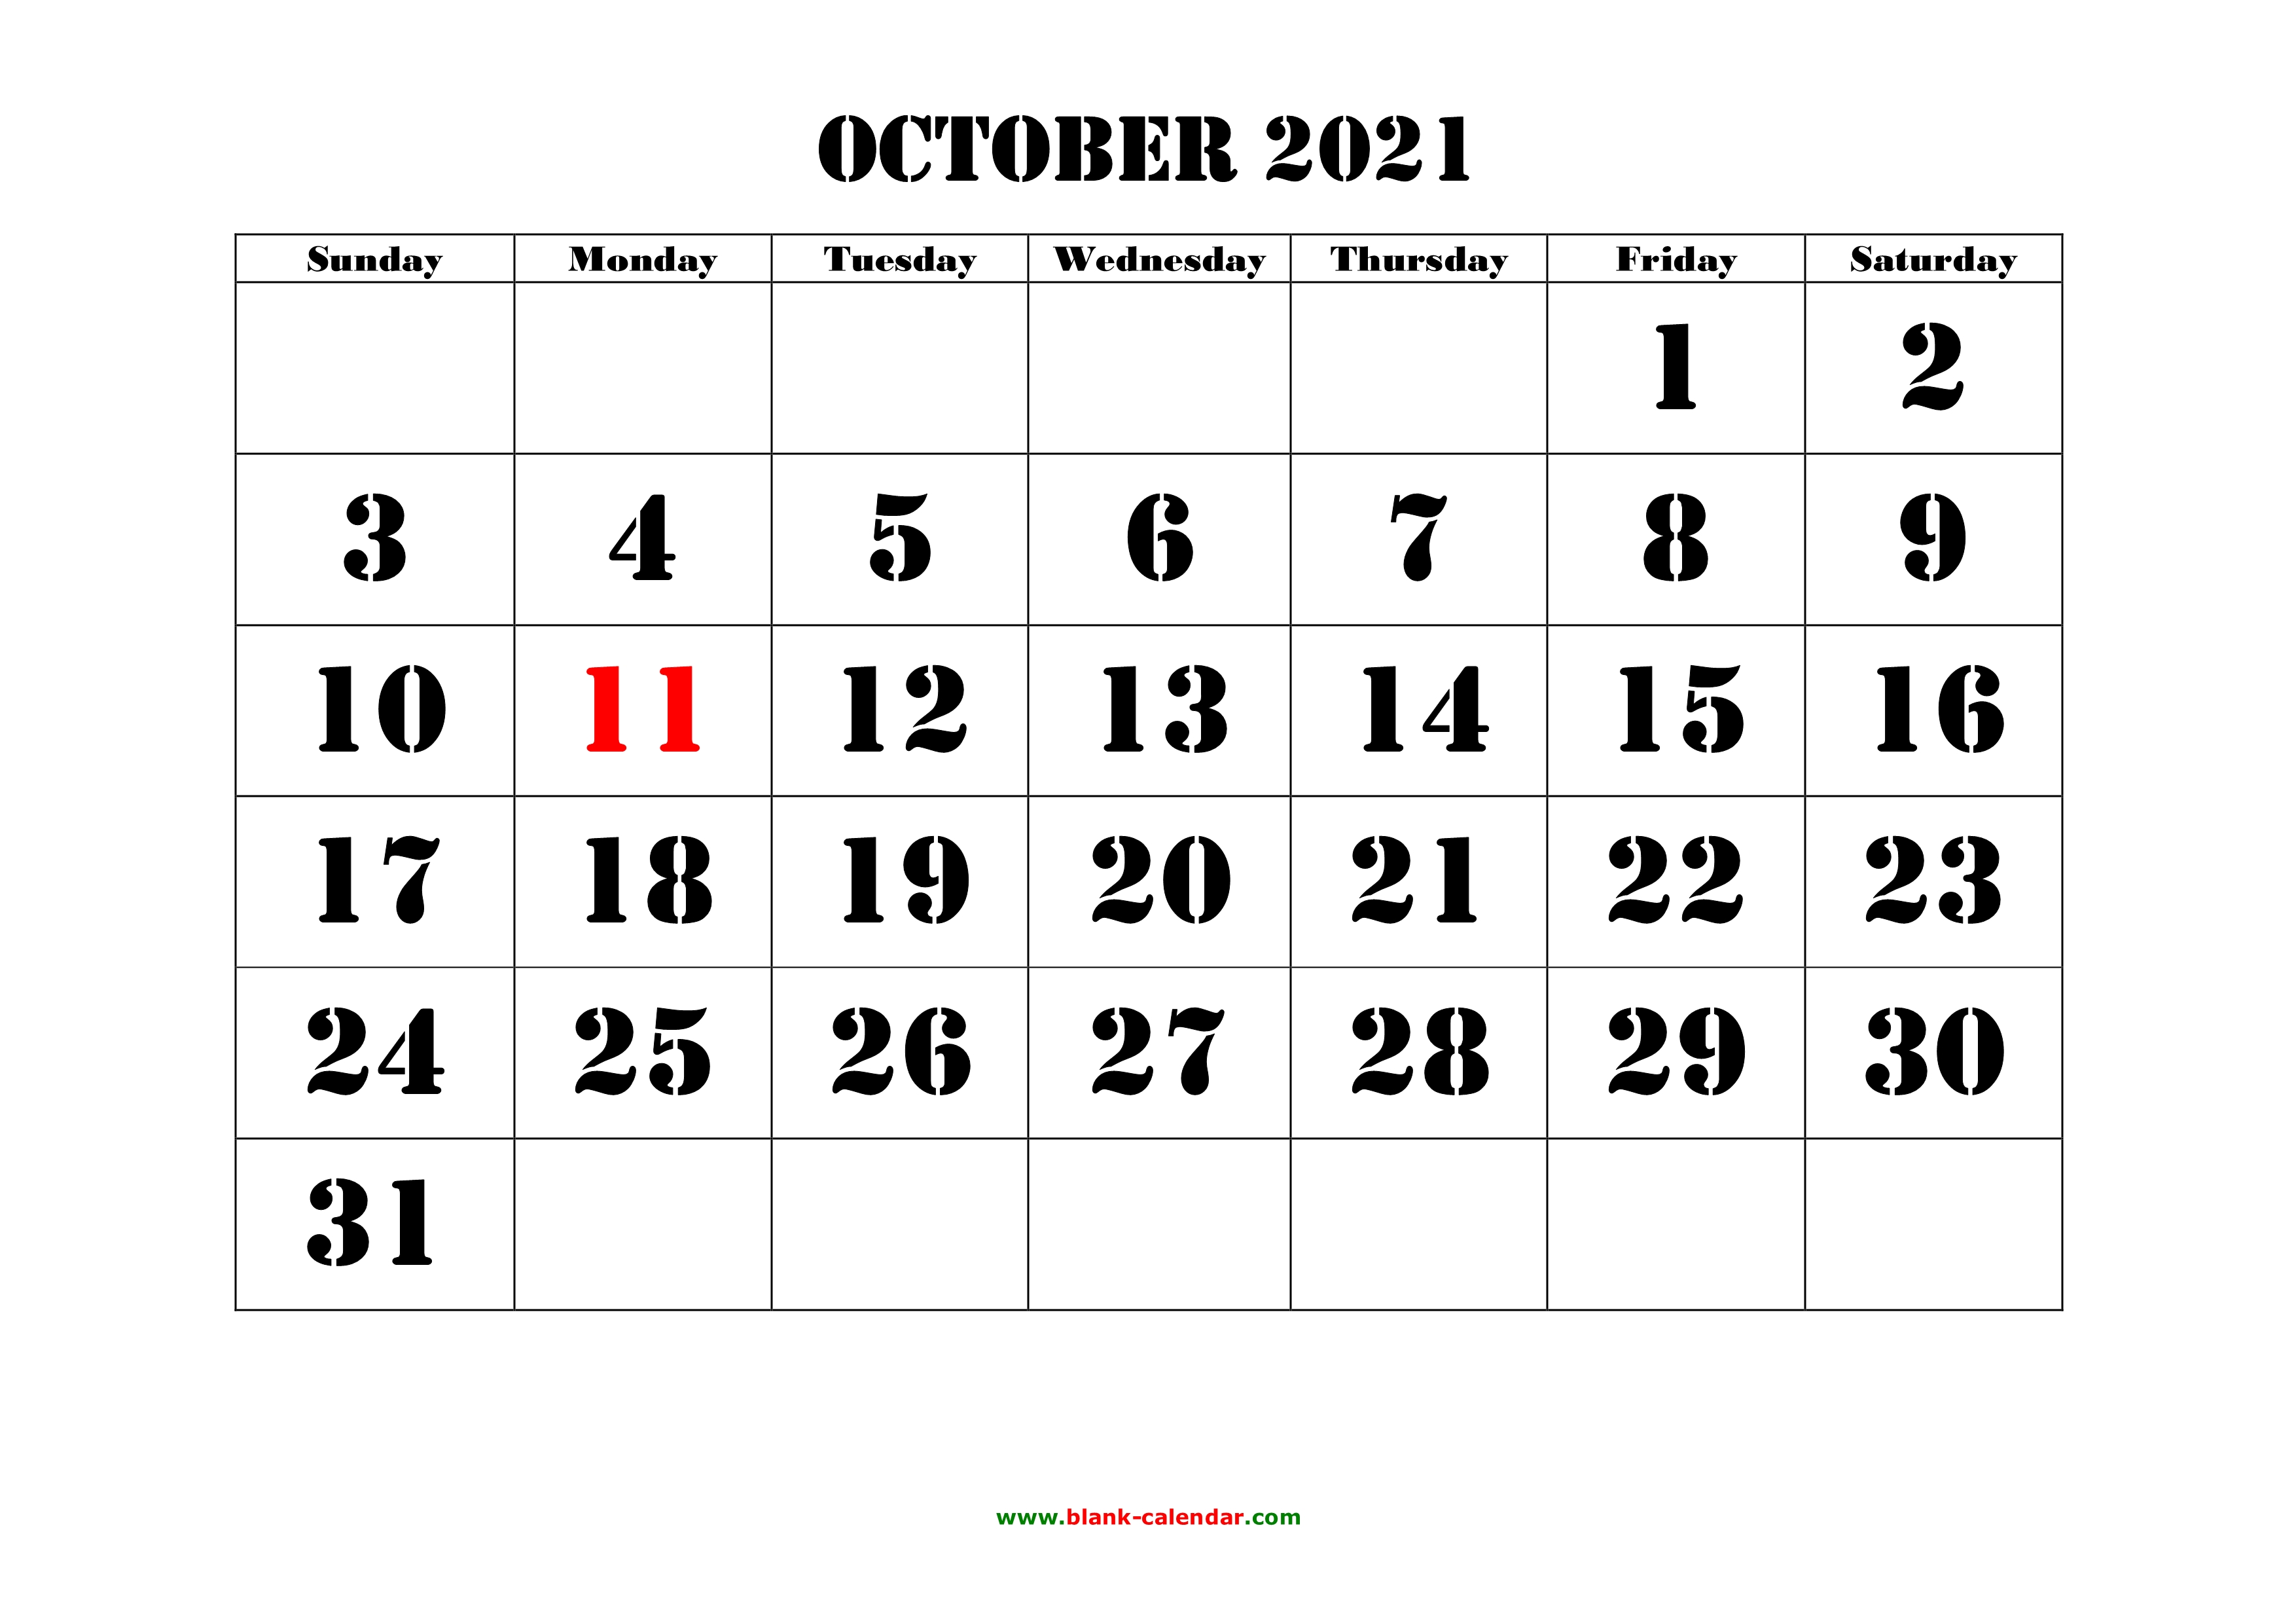 october 2021 calendar with notes Free Download Printable October 2021 Calendar Large Font Design Holidays On Red october 2021 calendar with notes